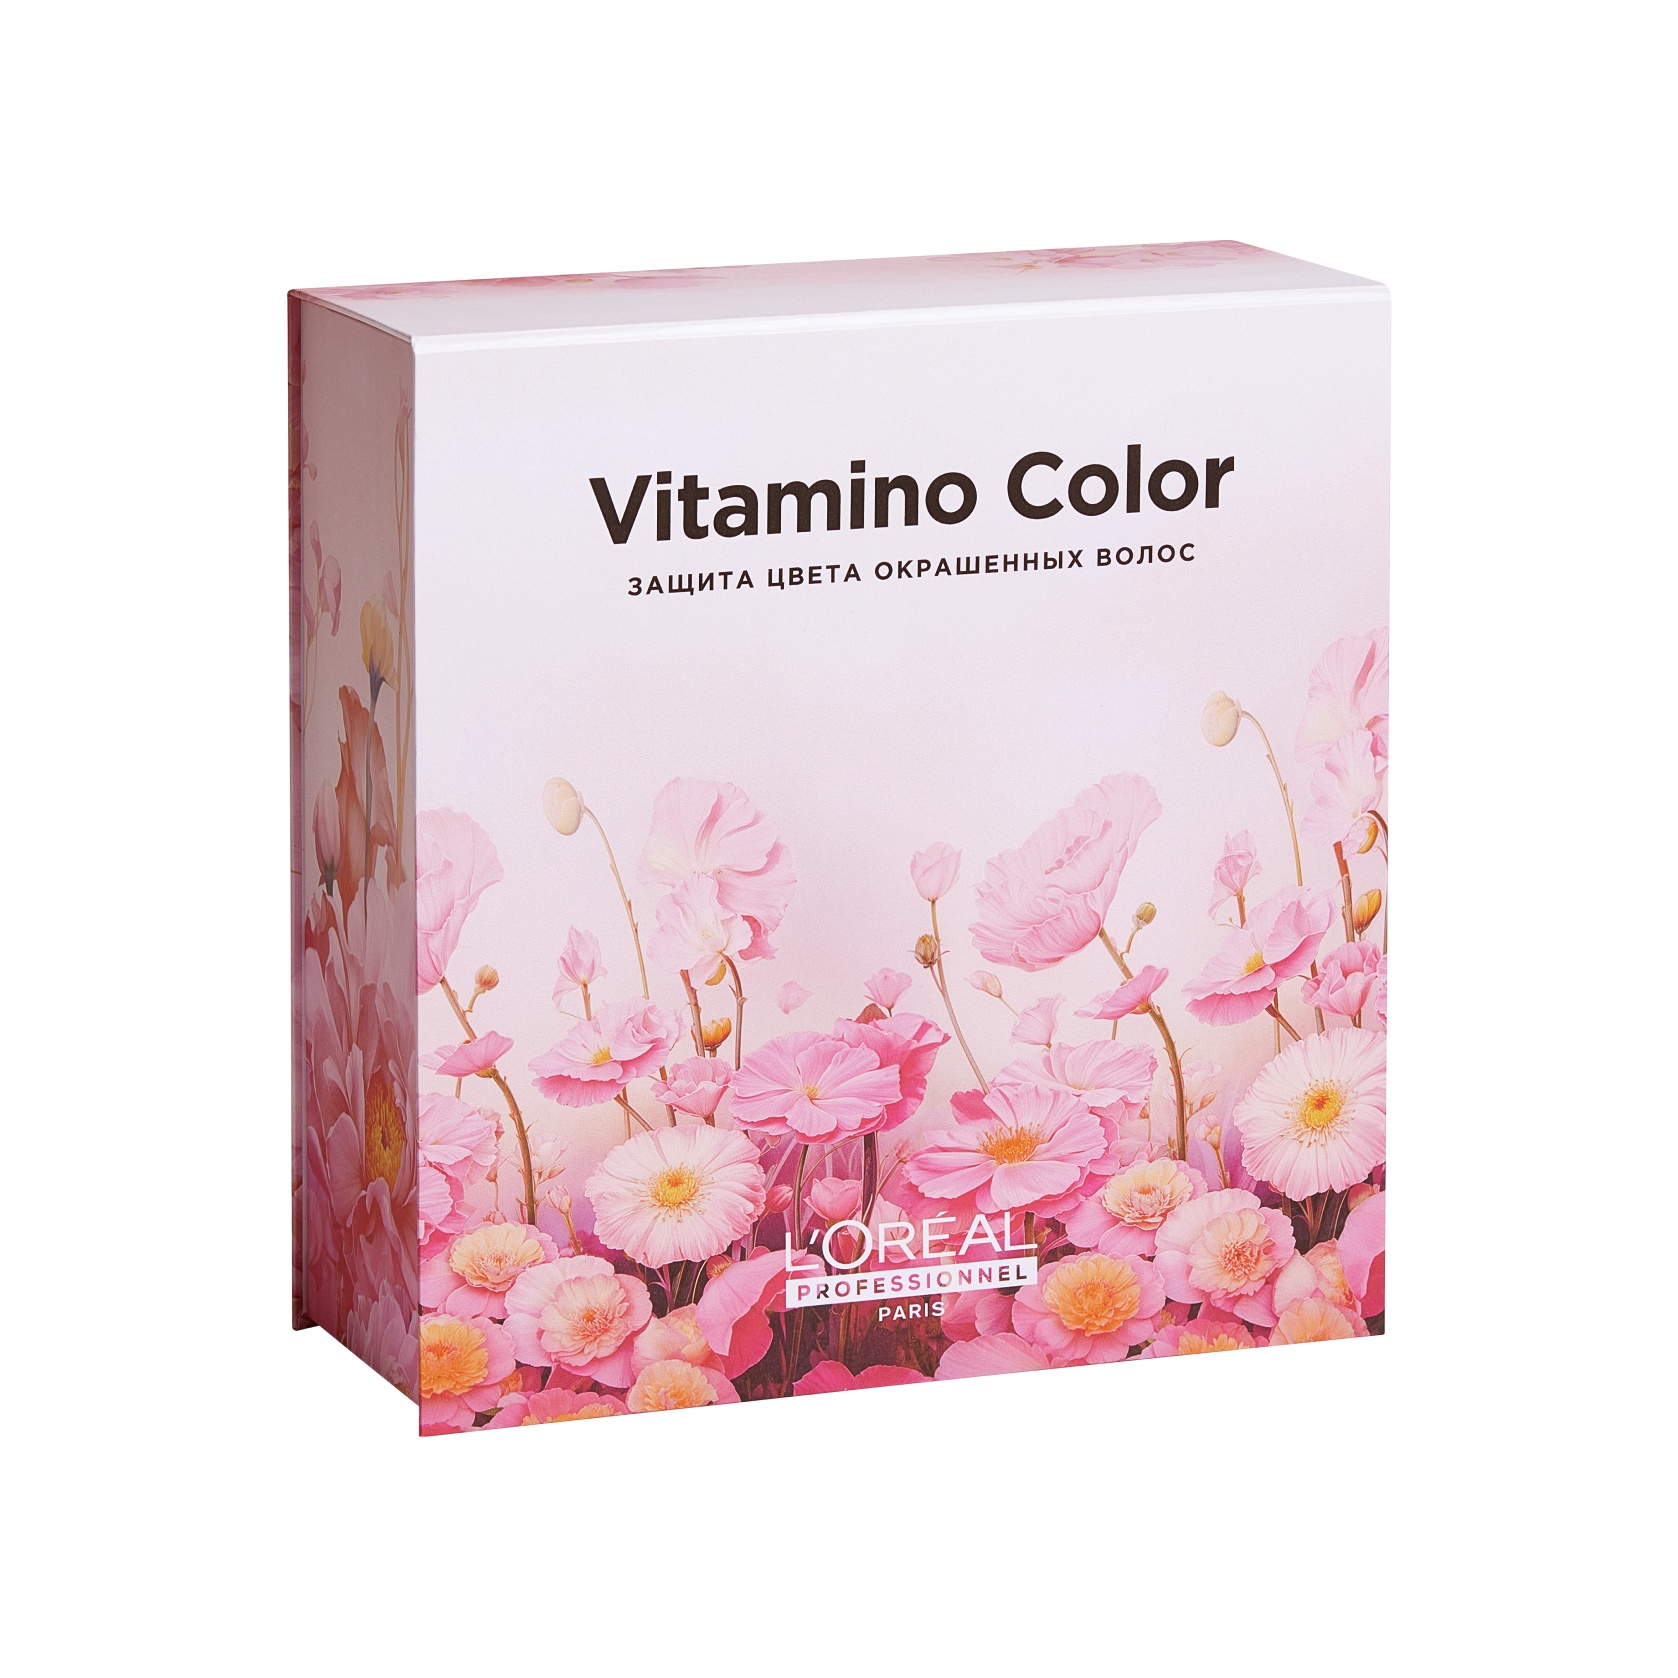 Набор Vitamino Color: Шампунь + маска для волос купить в VISAGEHALL